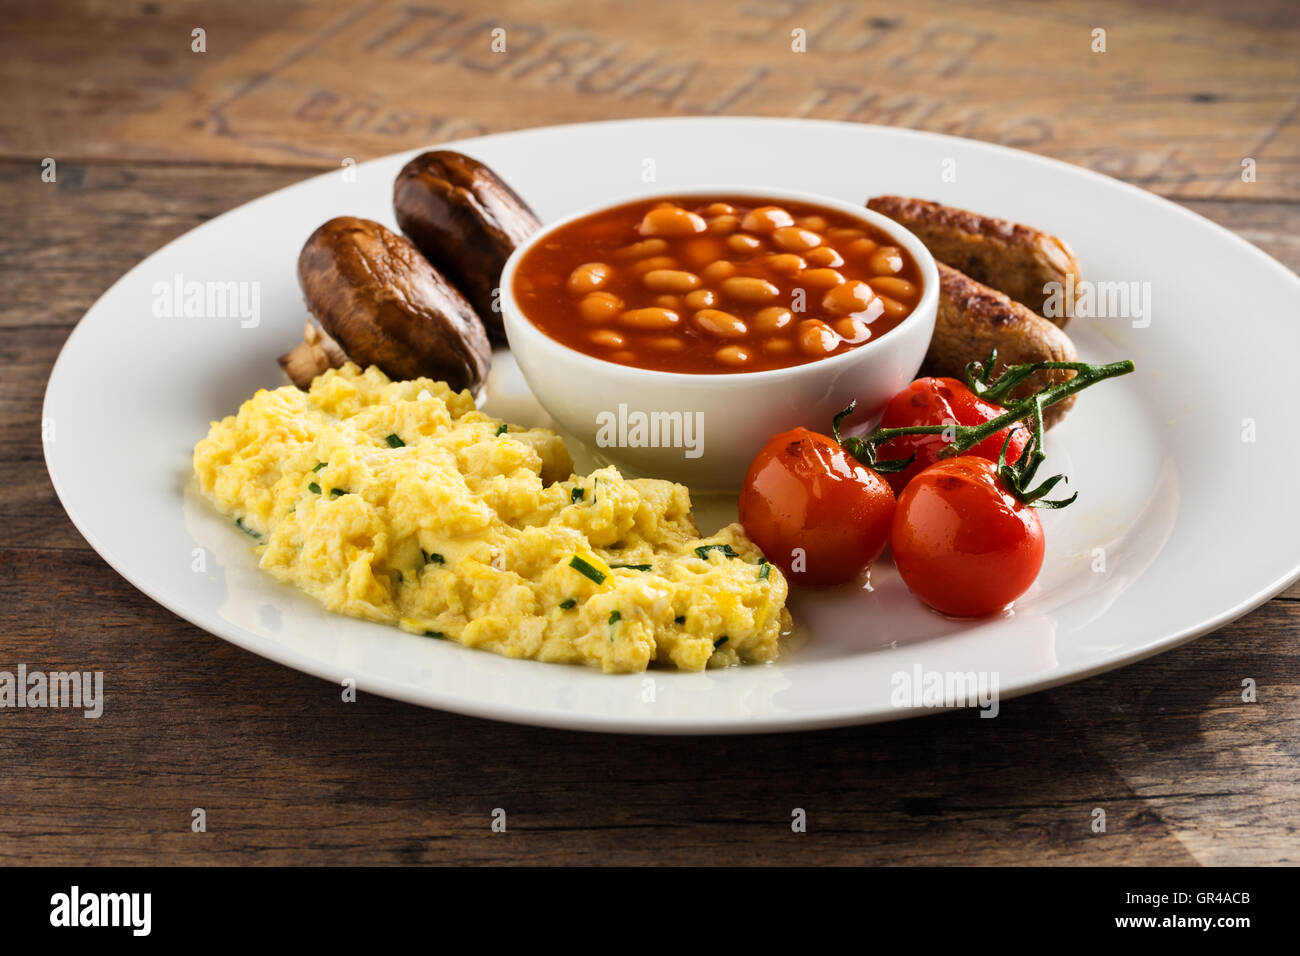 Image result for breakfast, beans, eggs,